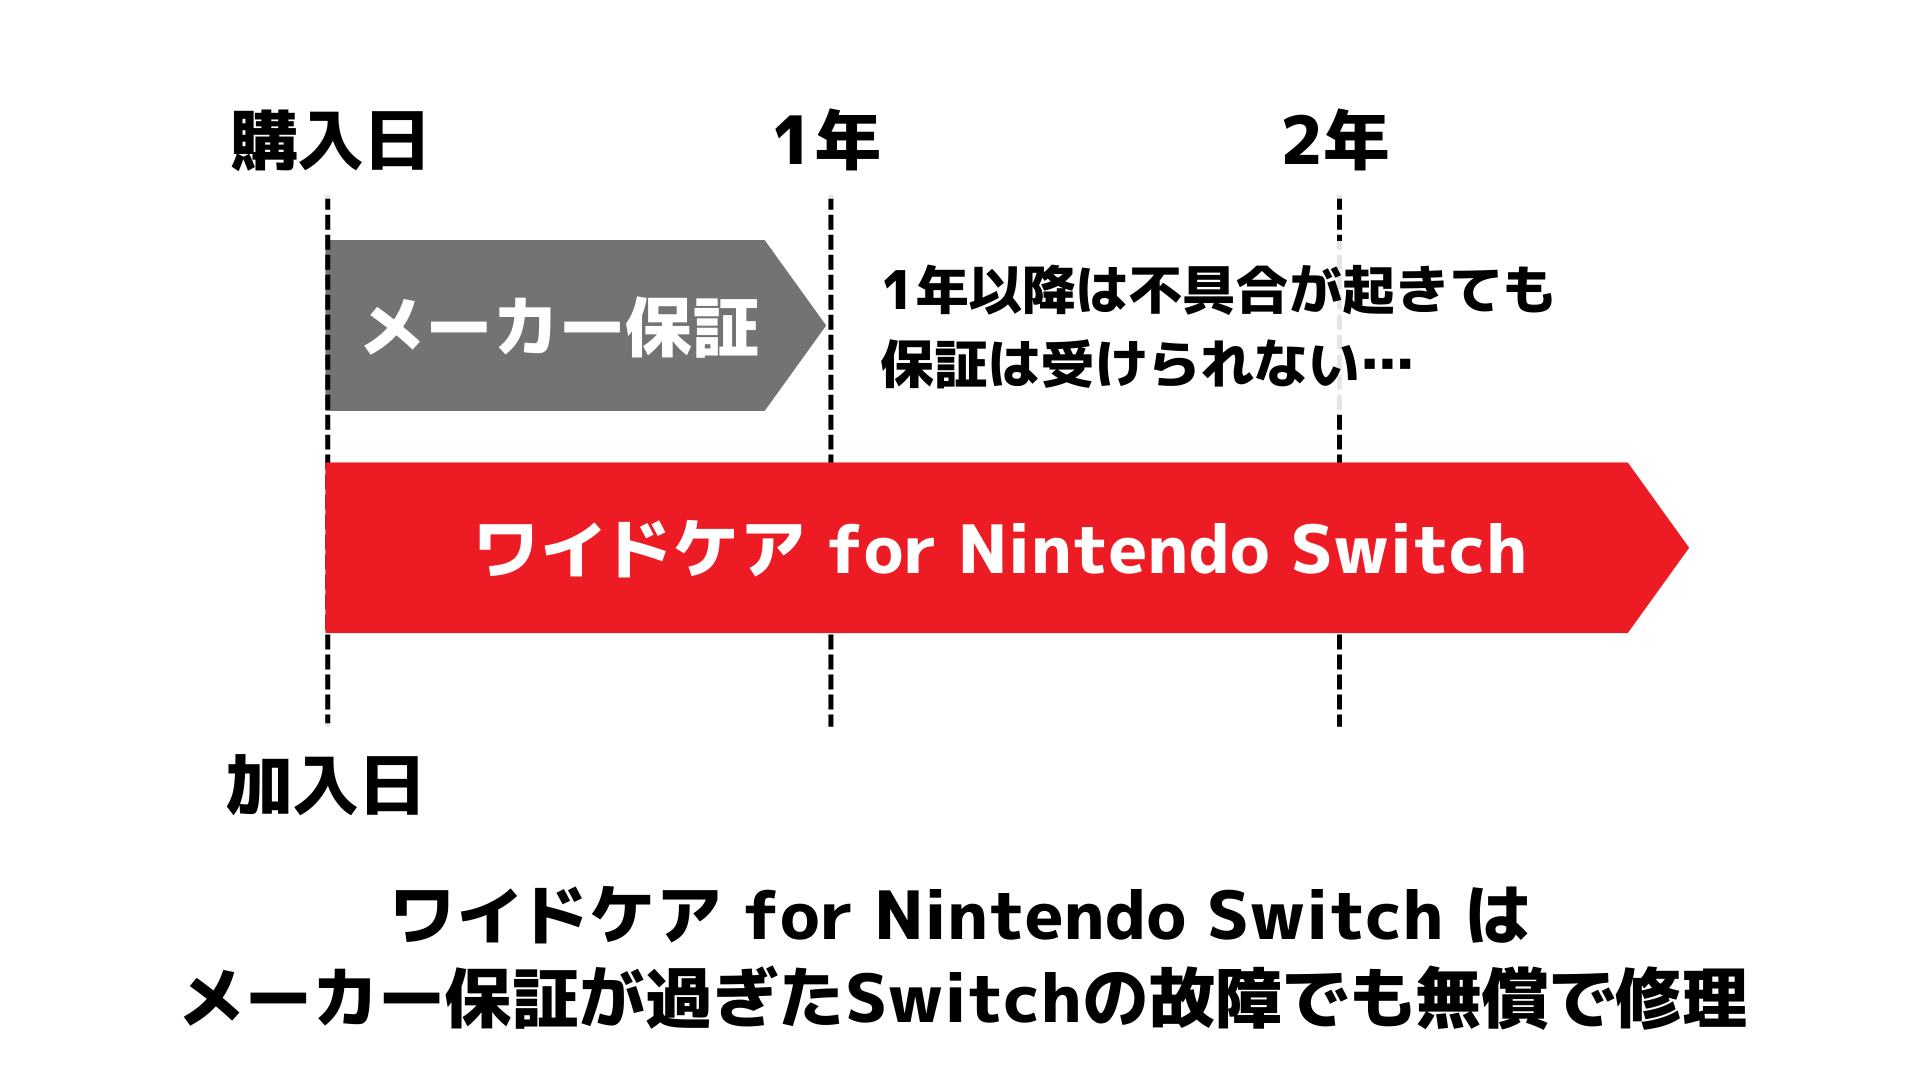 「ワイドケア for Nintendo Switch」の特徴